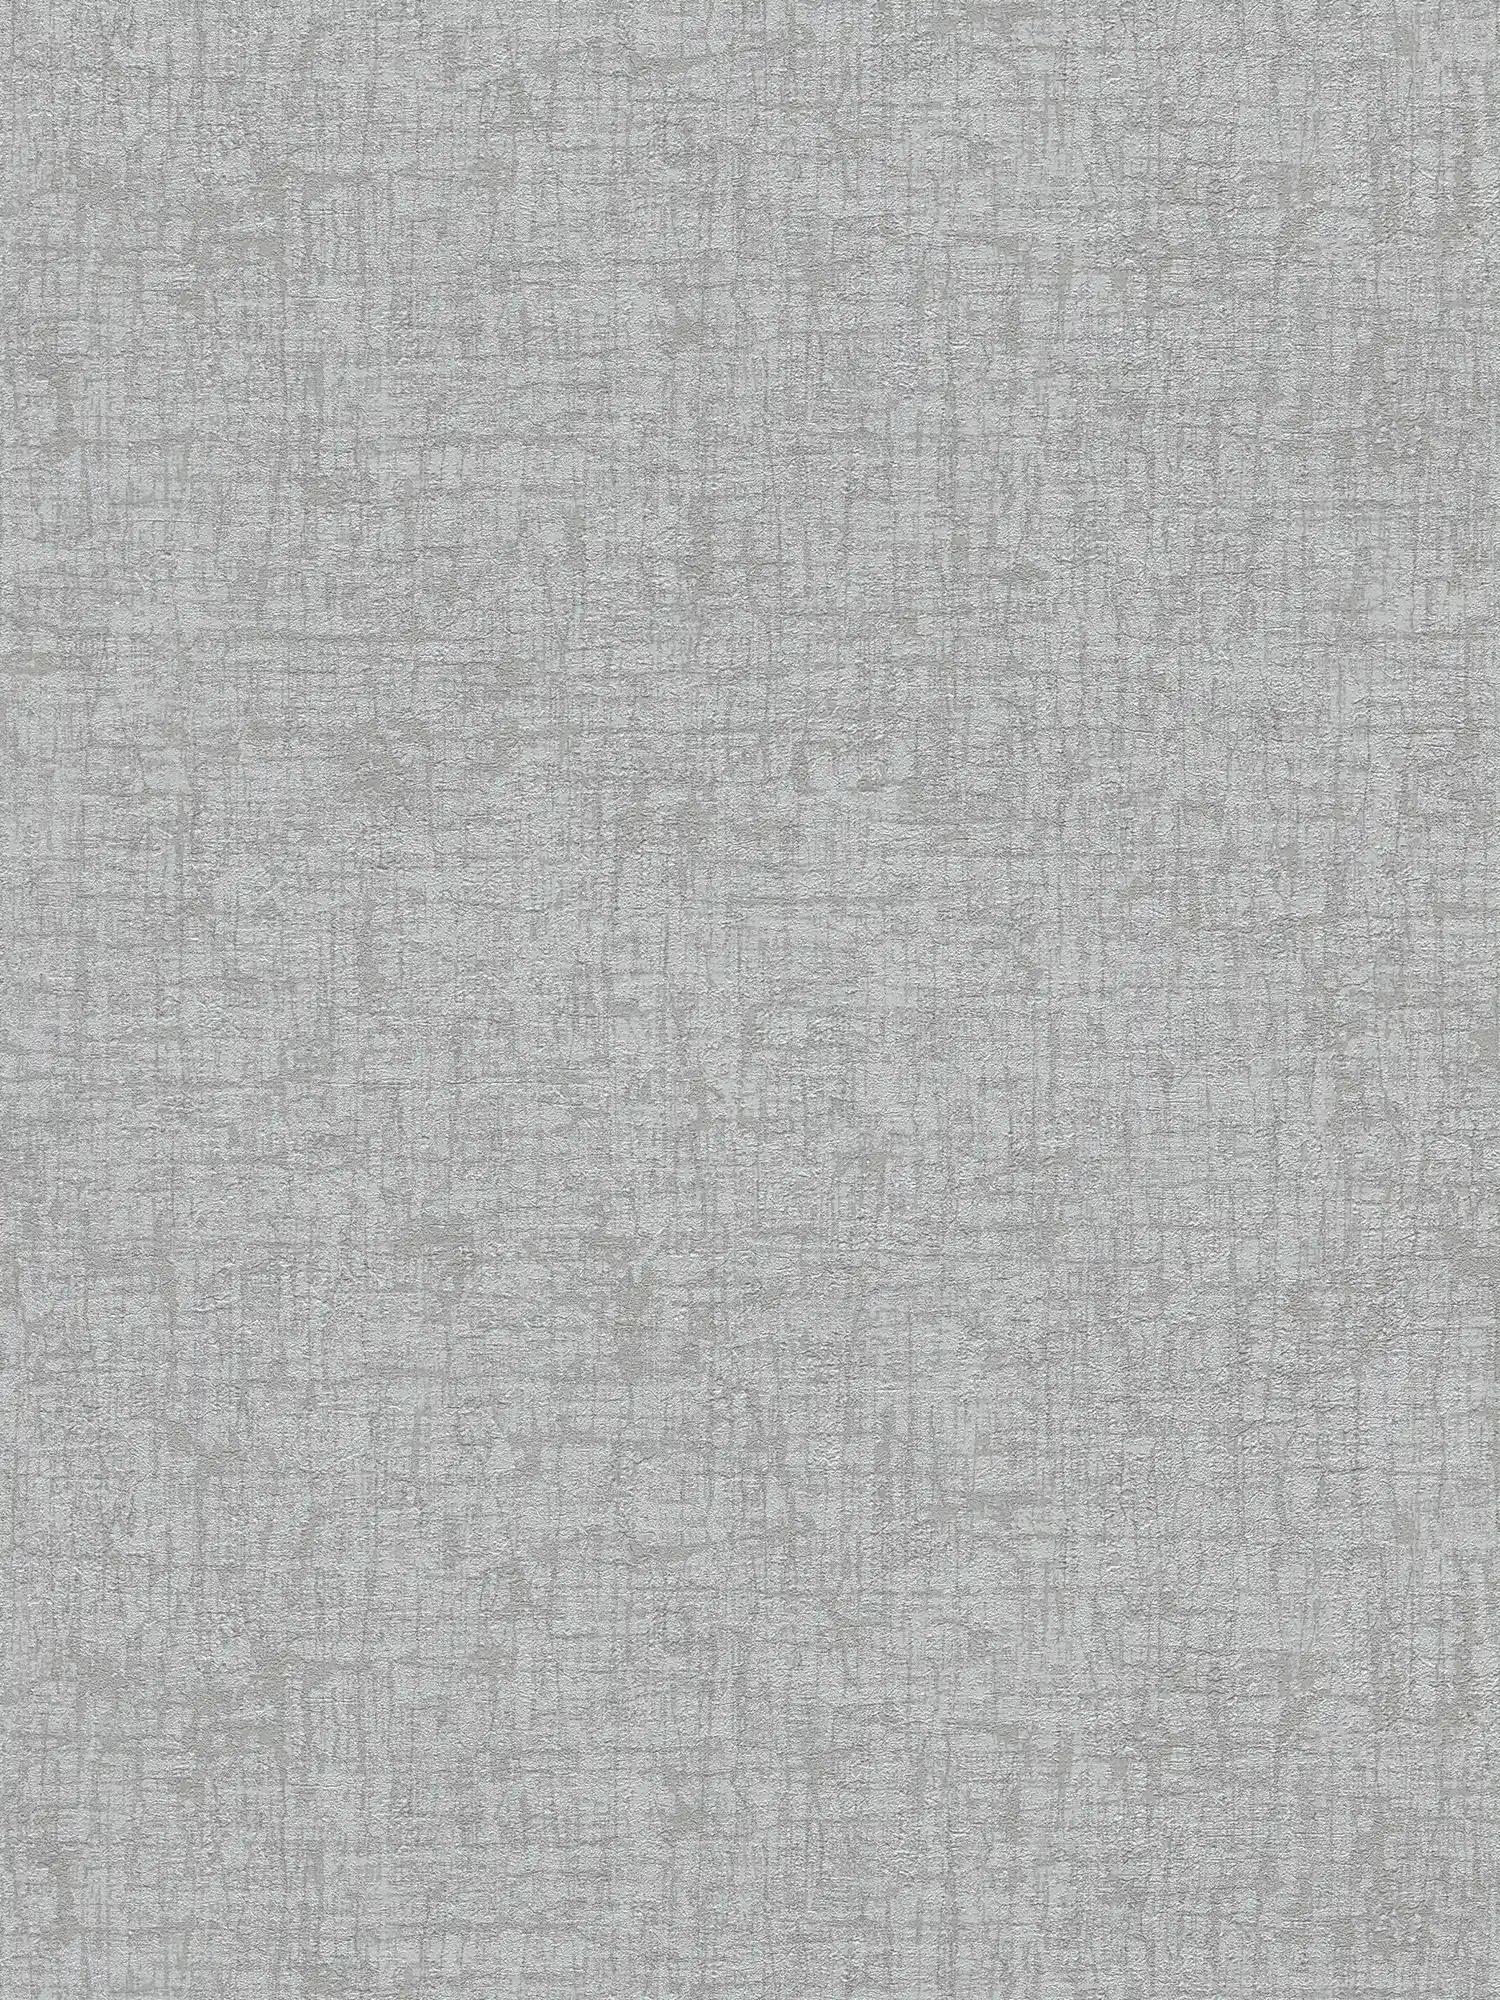 Vliesbehang met structuur en een licht glanzende textiellook - grijs, donkergrijs
